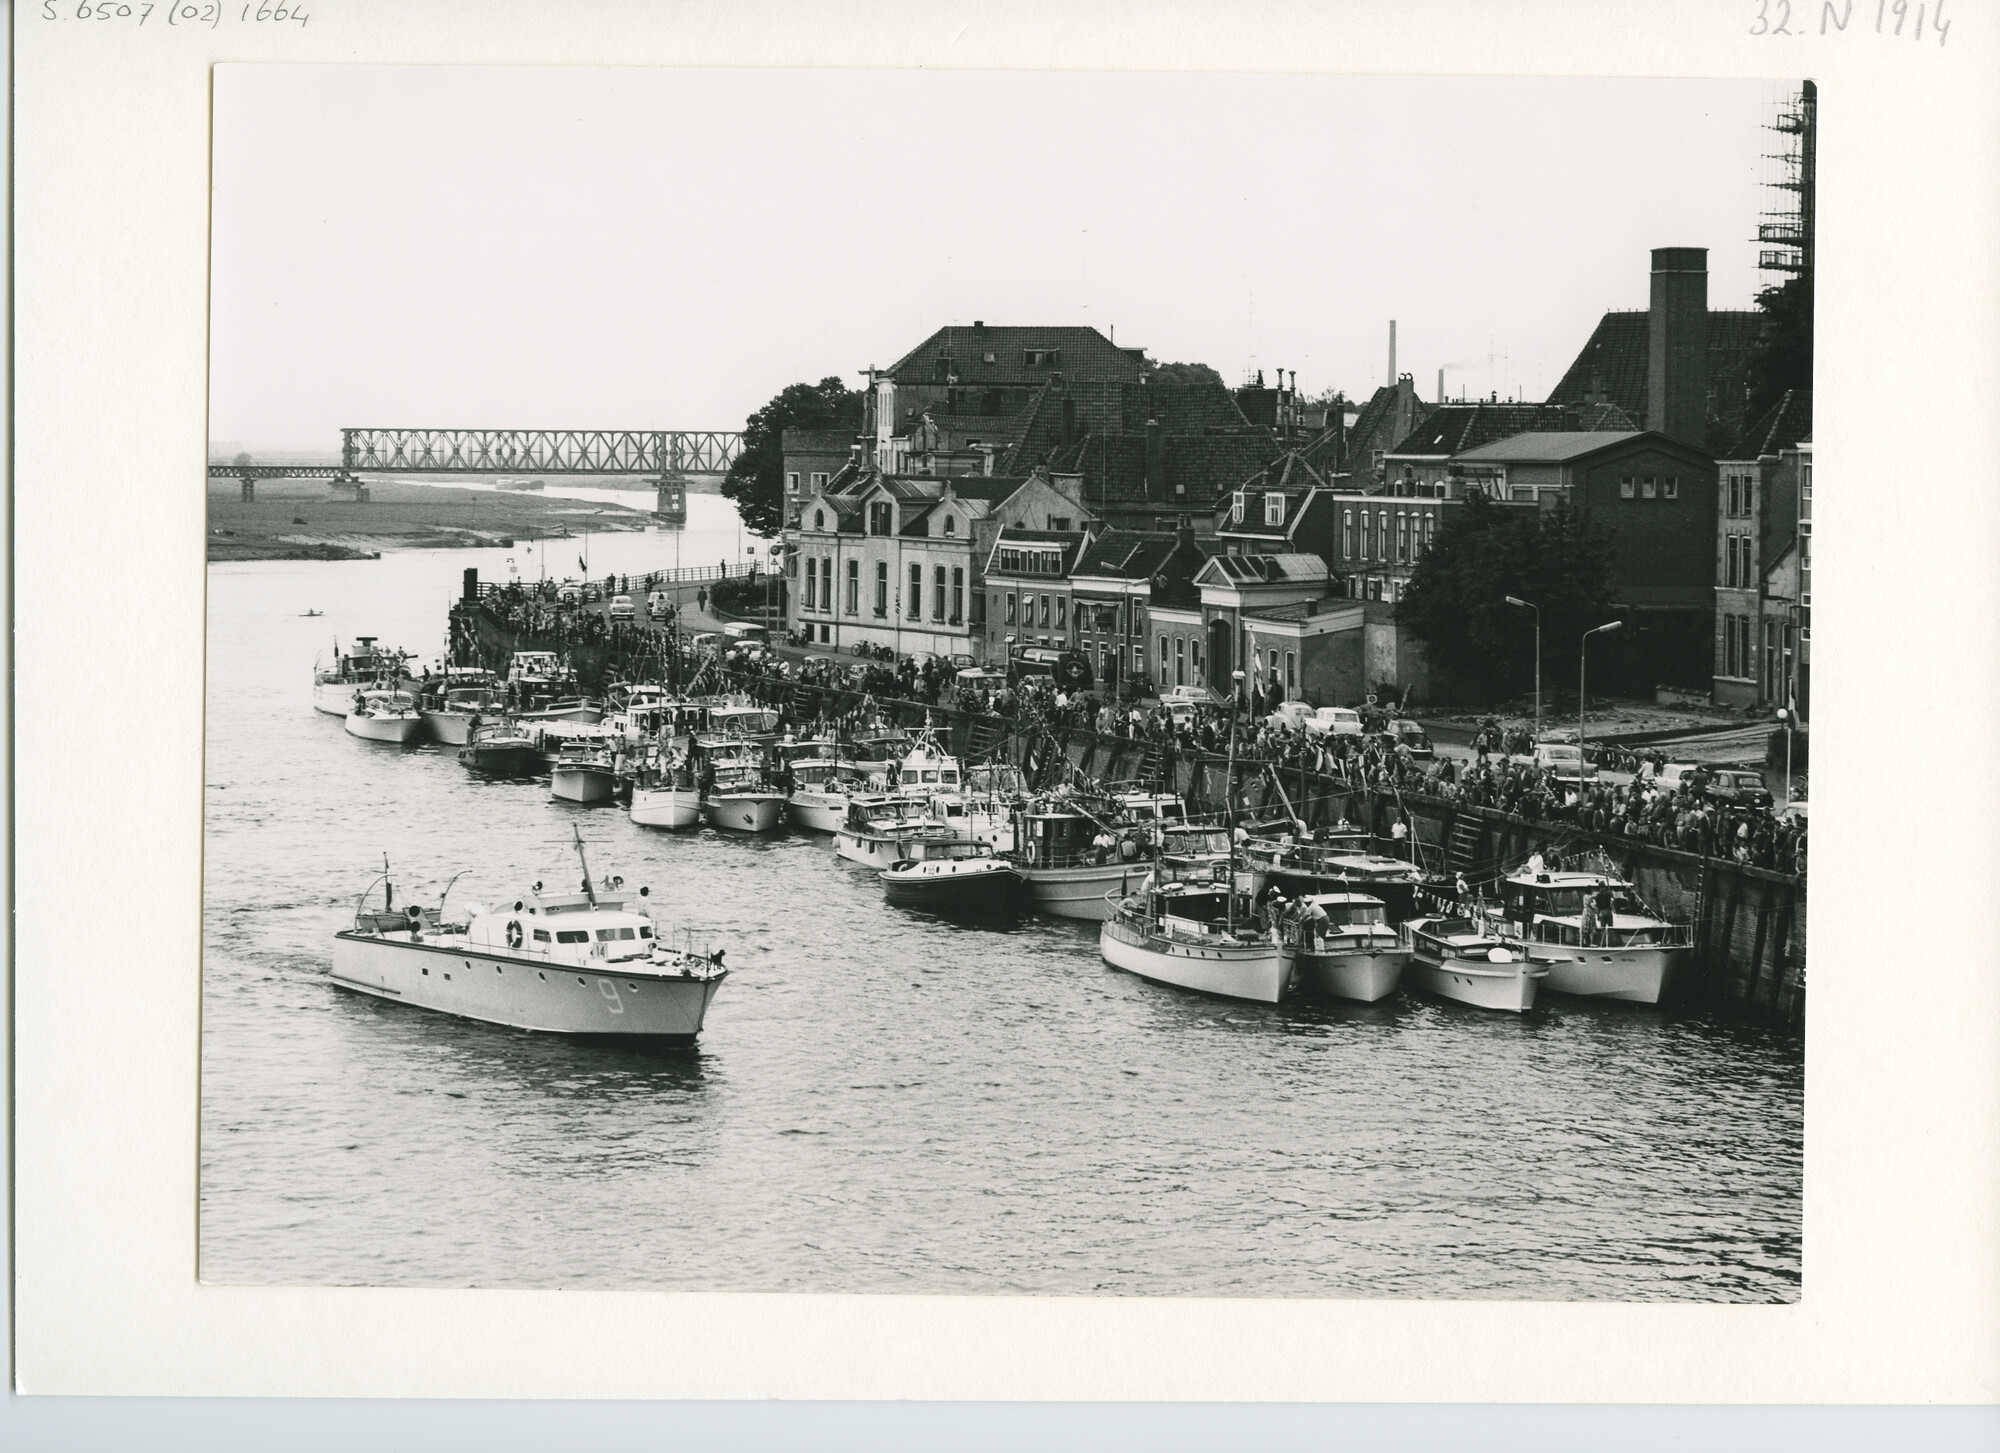 S.6507(02)1664.01; Zwart-wit foto van de deelnemers aan de Pavillon d'Or 1960 afgemeerd in de Gelderse IJssel te Deventer; foto